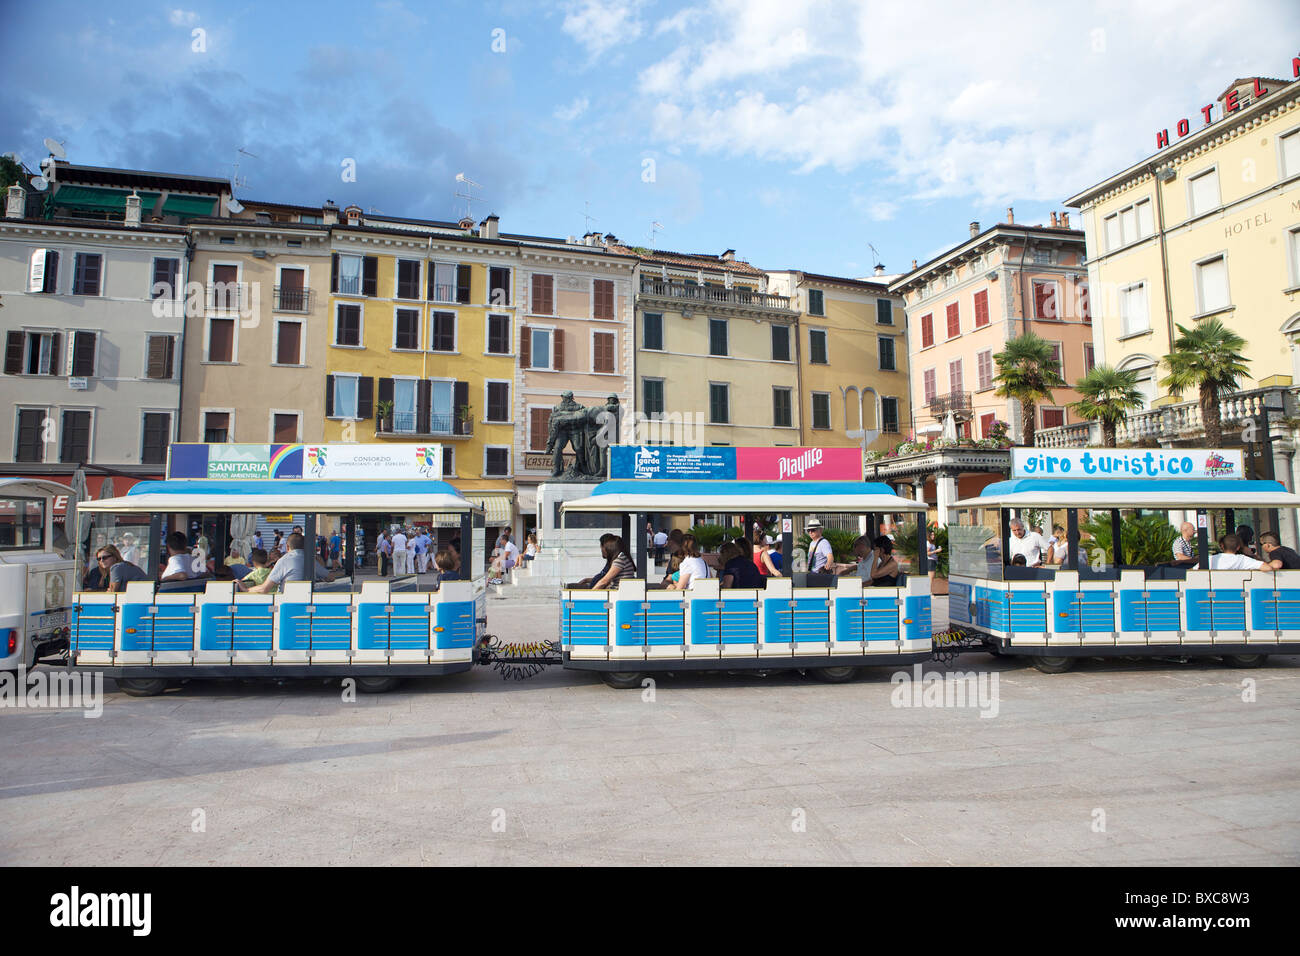 Die blaue Straßenbahn oder Zug, dass Touristen zeigt, um die Highlights und Sehenswürdigkeiten von Salo, Provinz Brescia in Italien Stockfoto